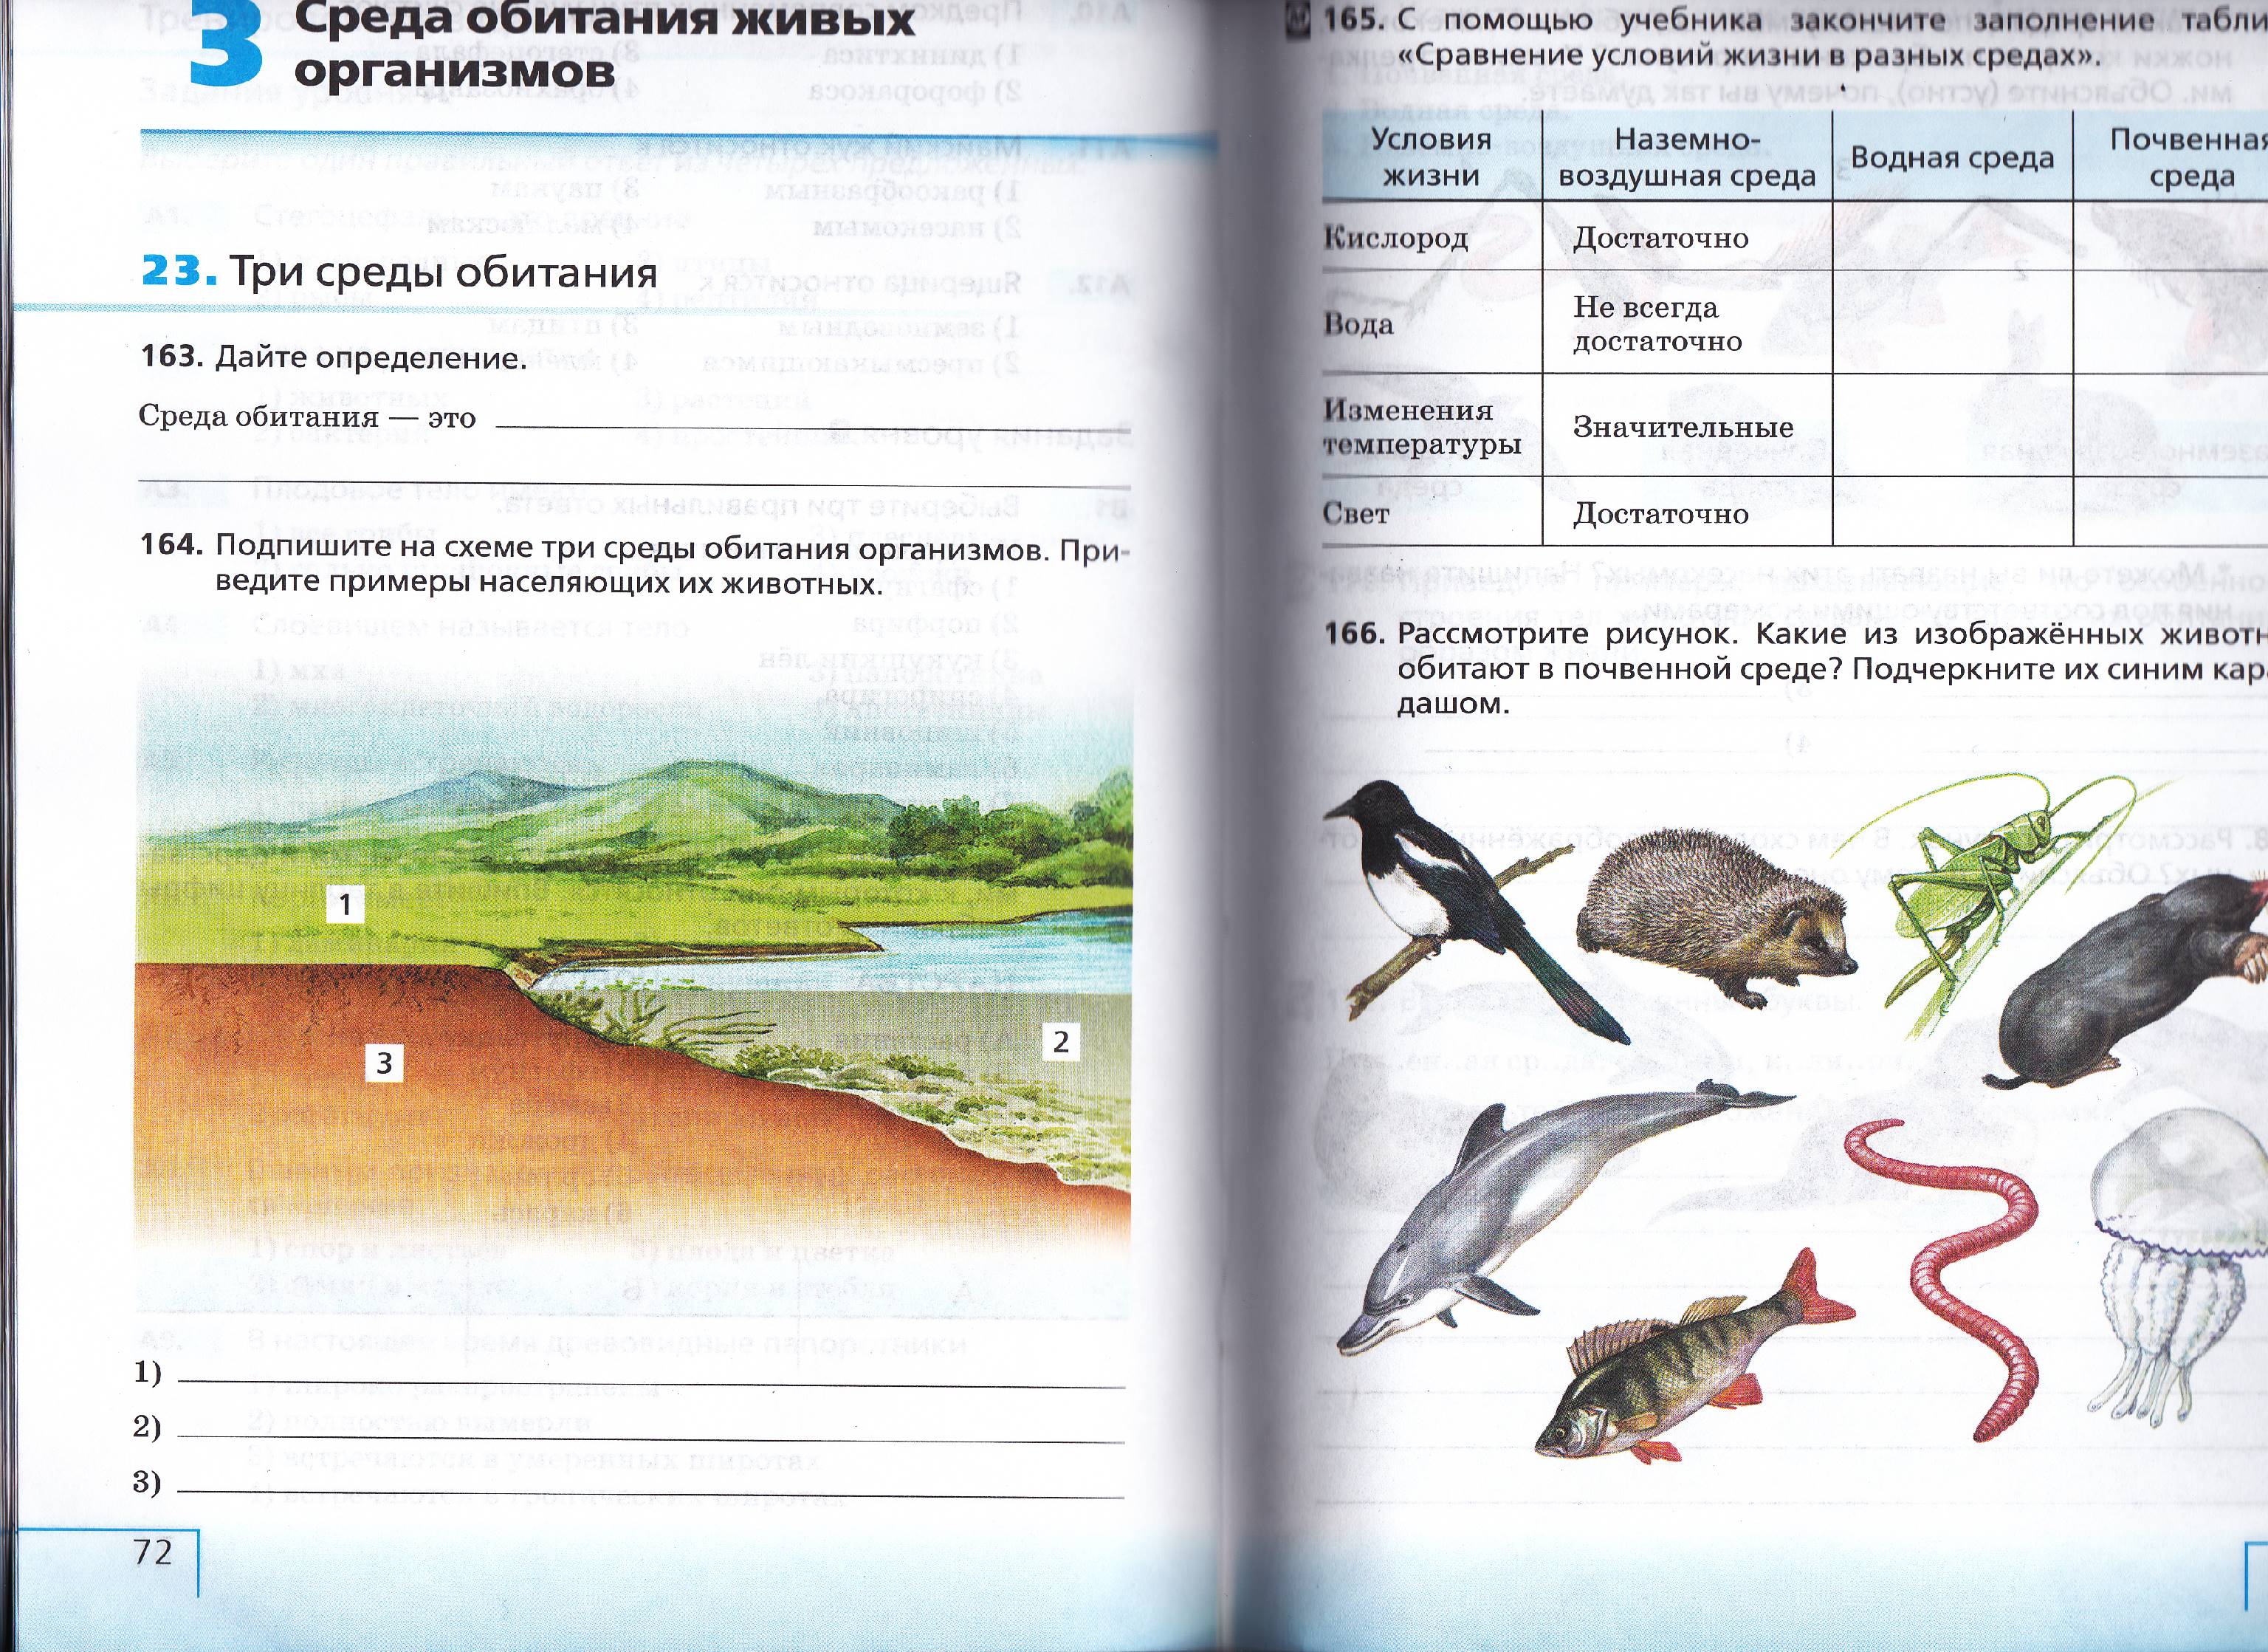 Контрольная работа по биологии на тему Среда обитания живых организмов (5 класс)